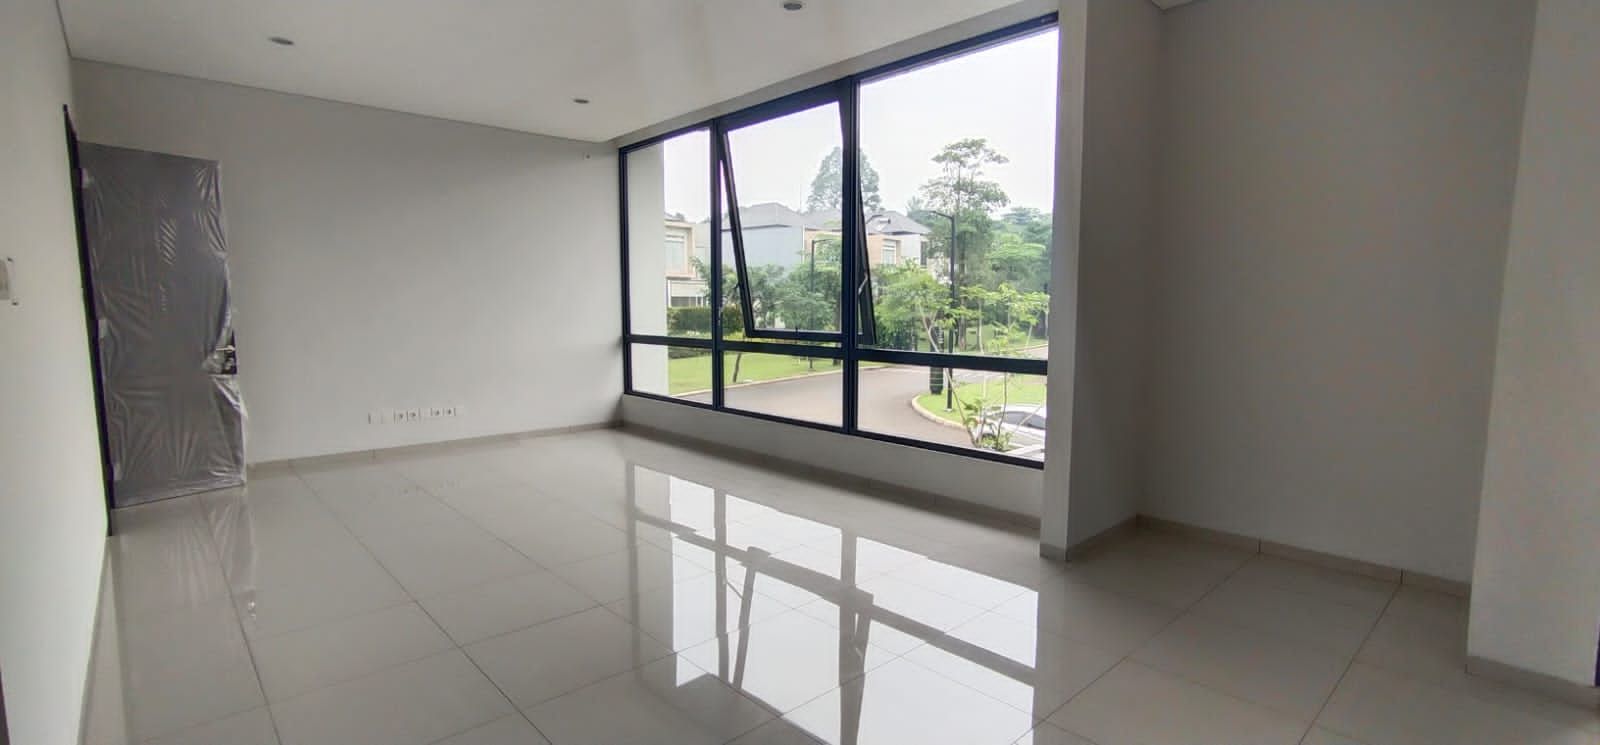 Agensi Rumah 3 Lantai Di Permata Hijau Jakarta Selatan